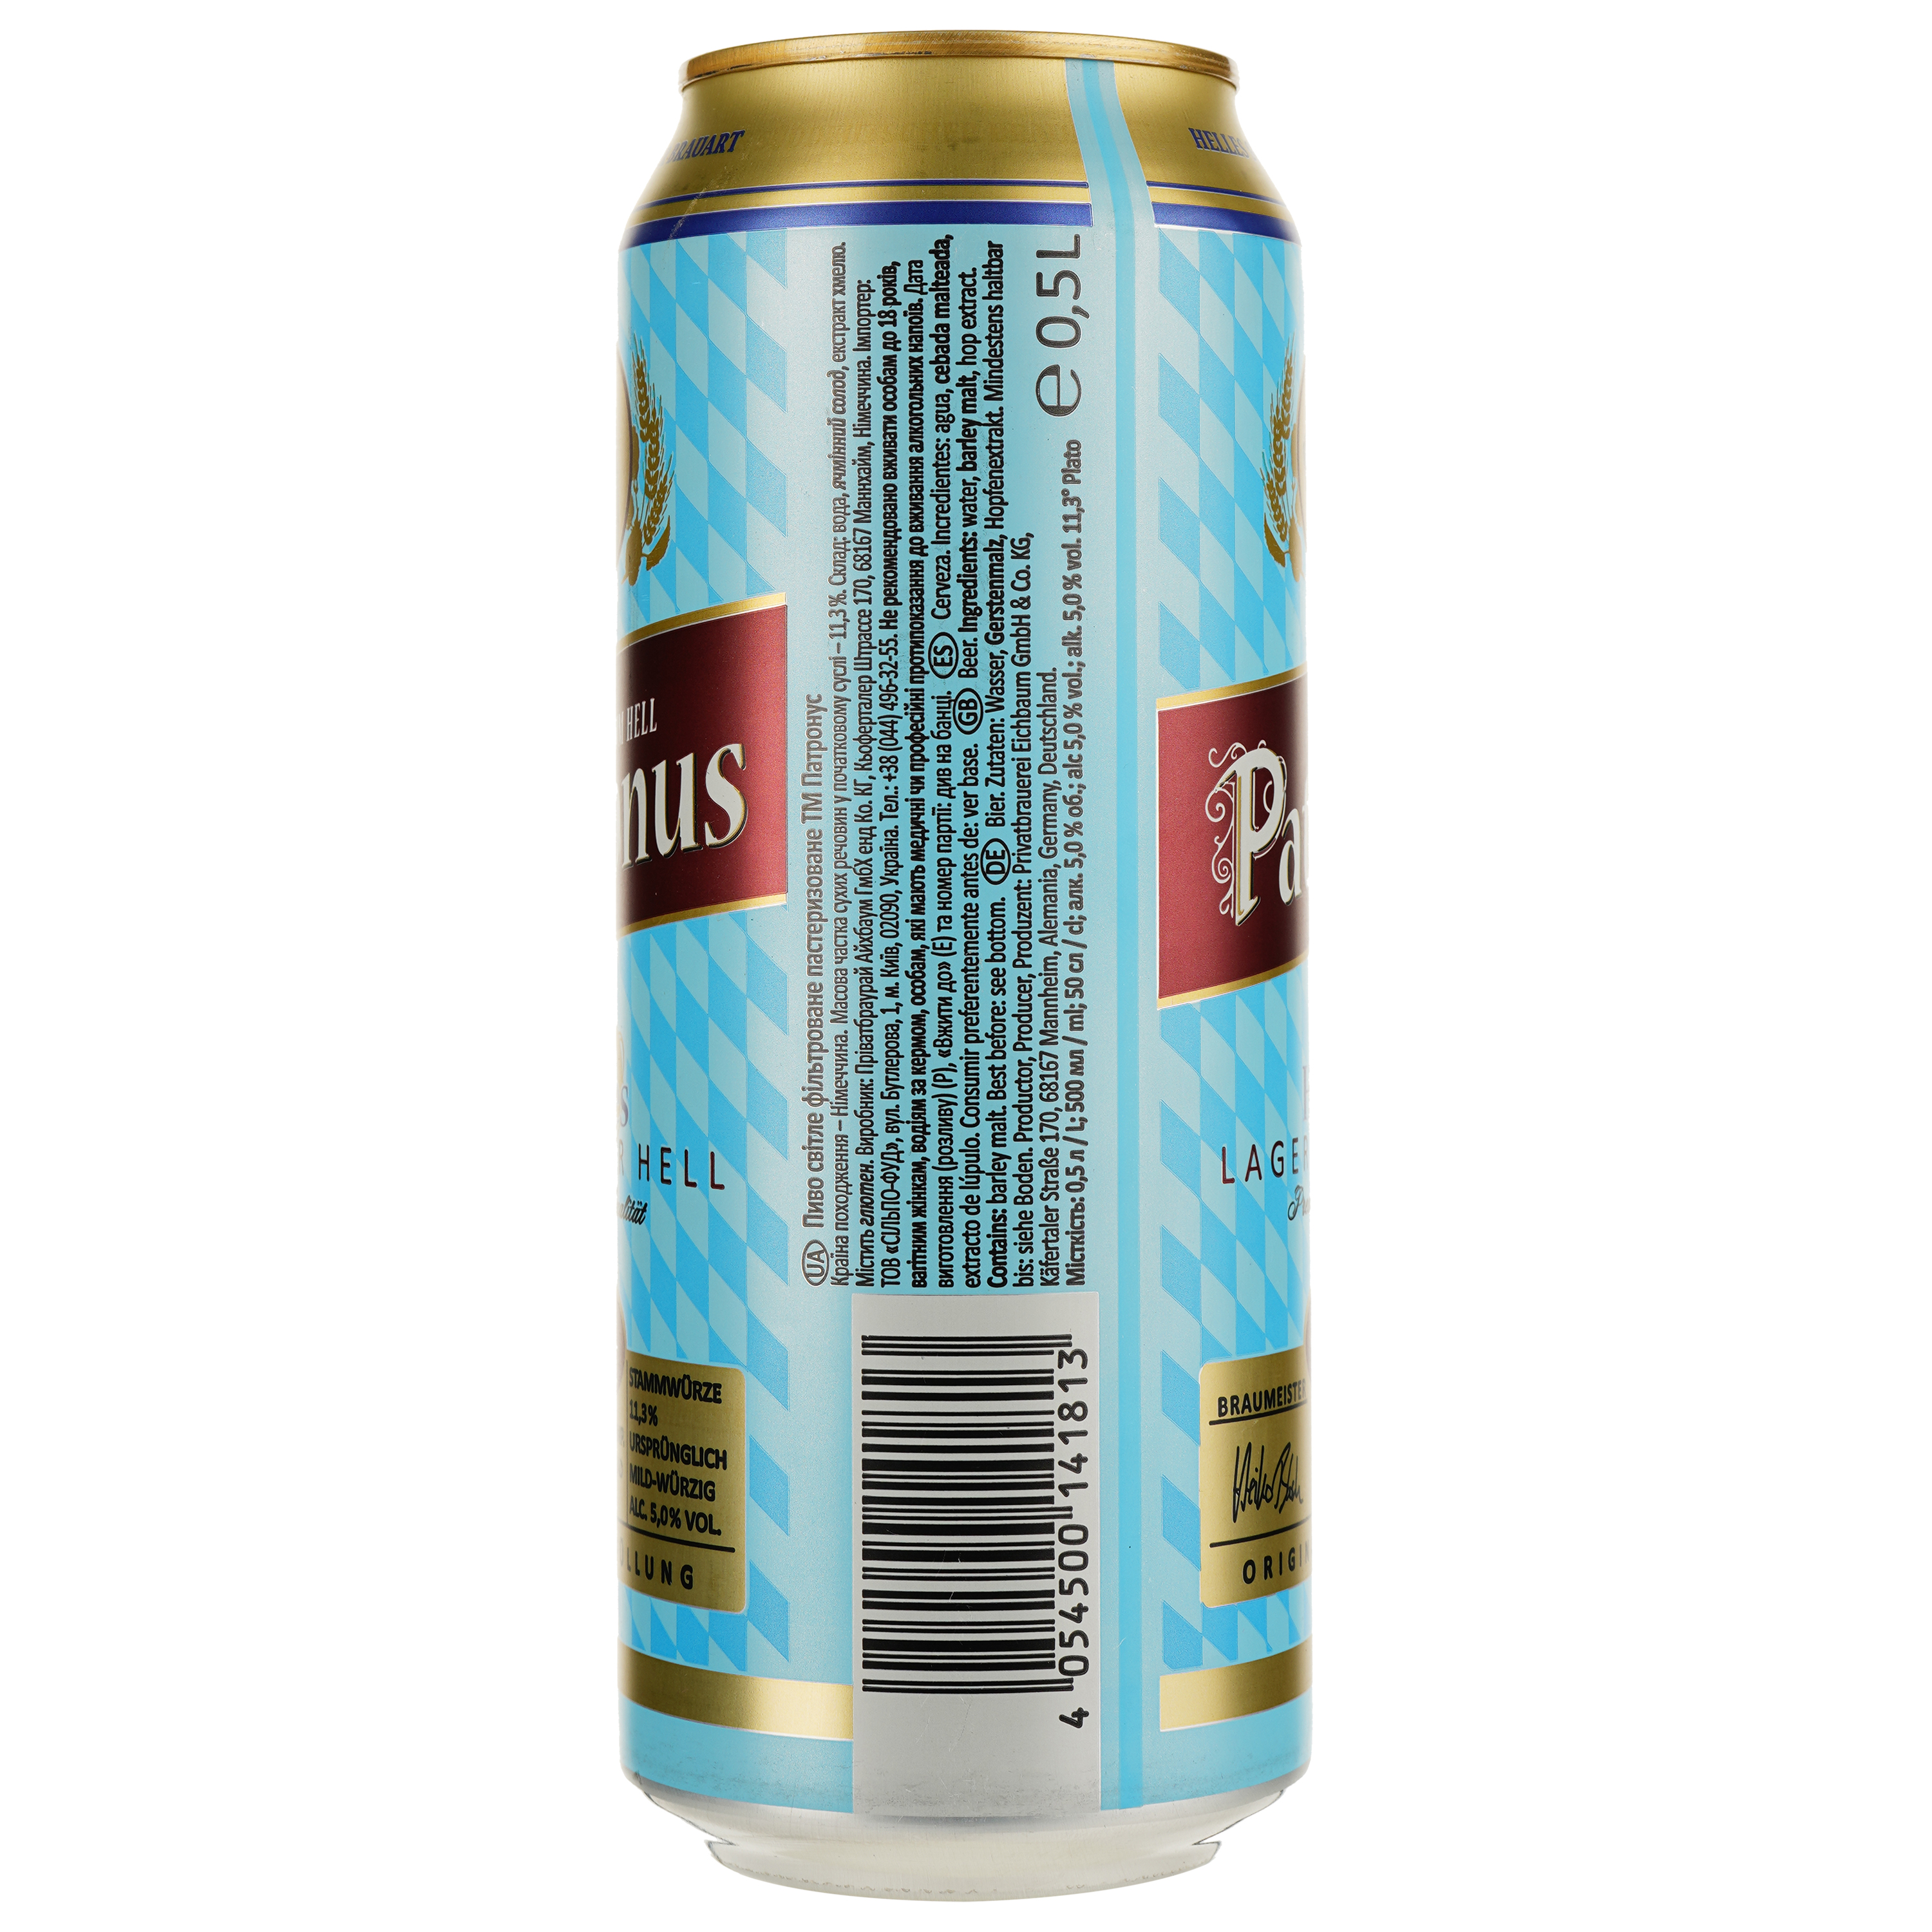 Пиво Patronus Helles Lager, светлое, 5%, ж/б, 0,5 л (875838) - фото 2